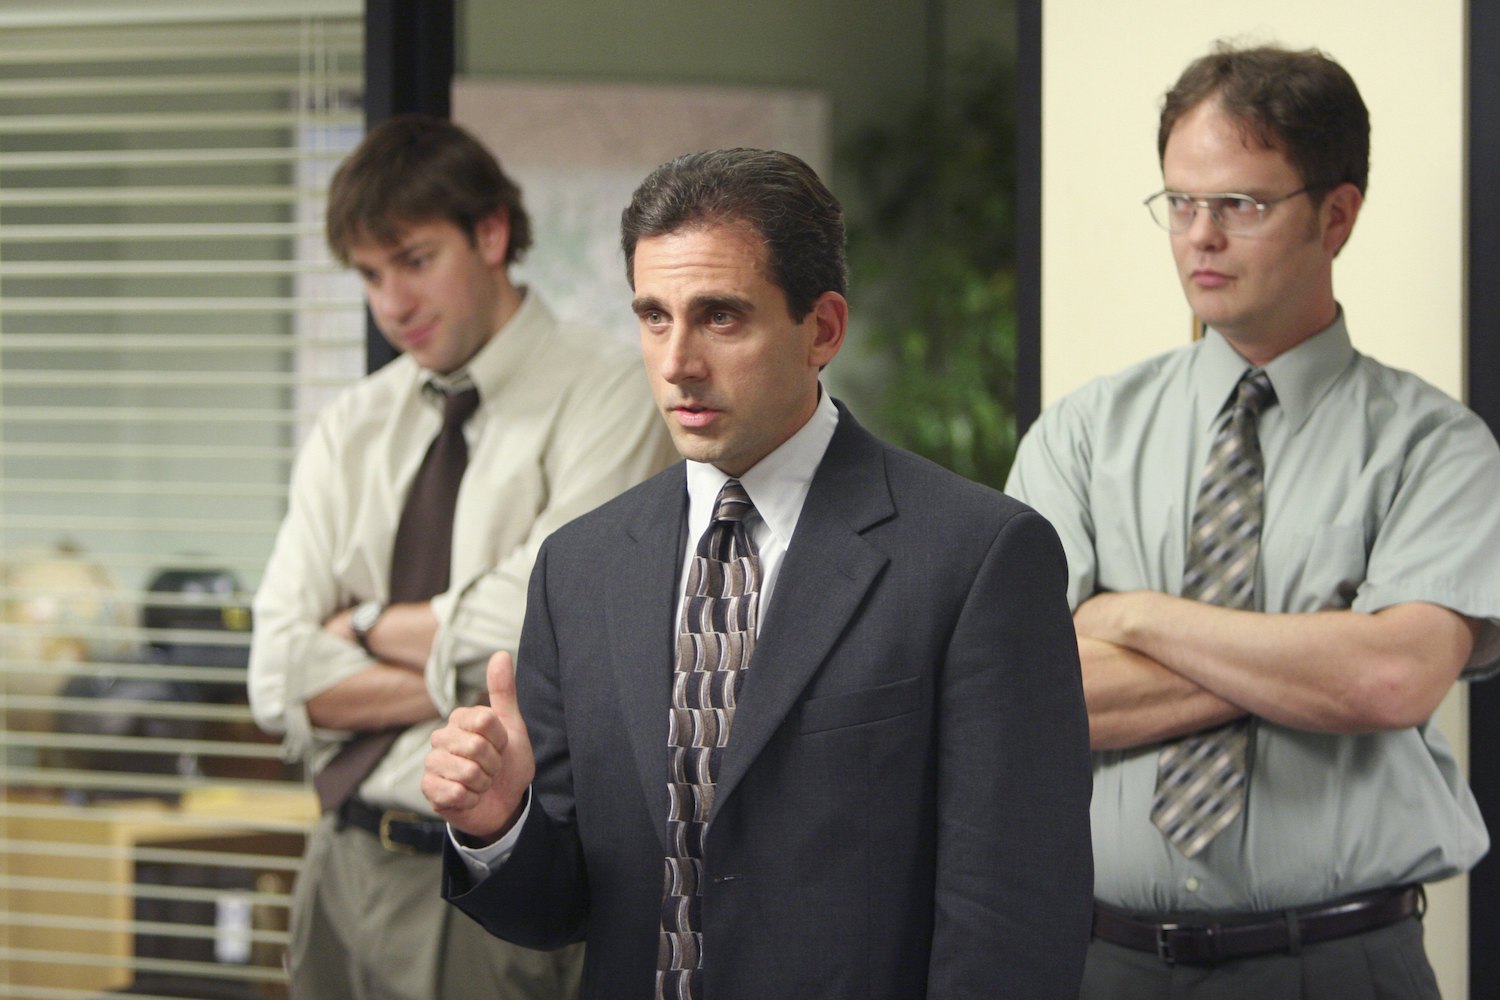 The Office stars John Krasinski as Jim Halpert, Steve Carell as Michael Scott, and Rainn Wilson as Dwight Schrute